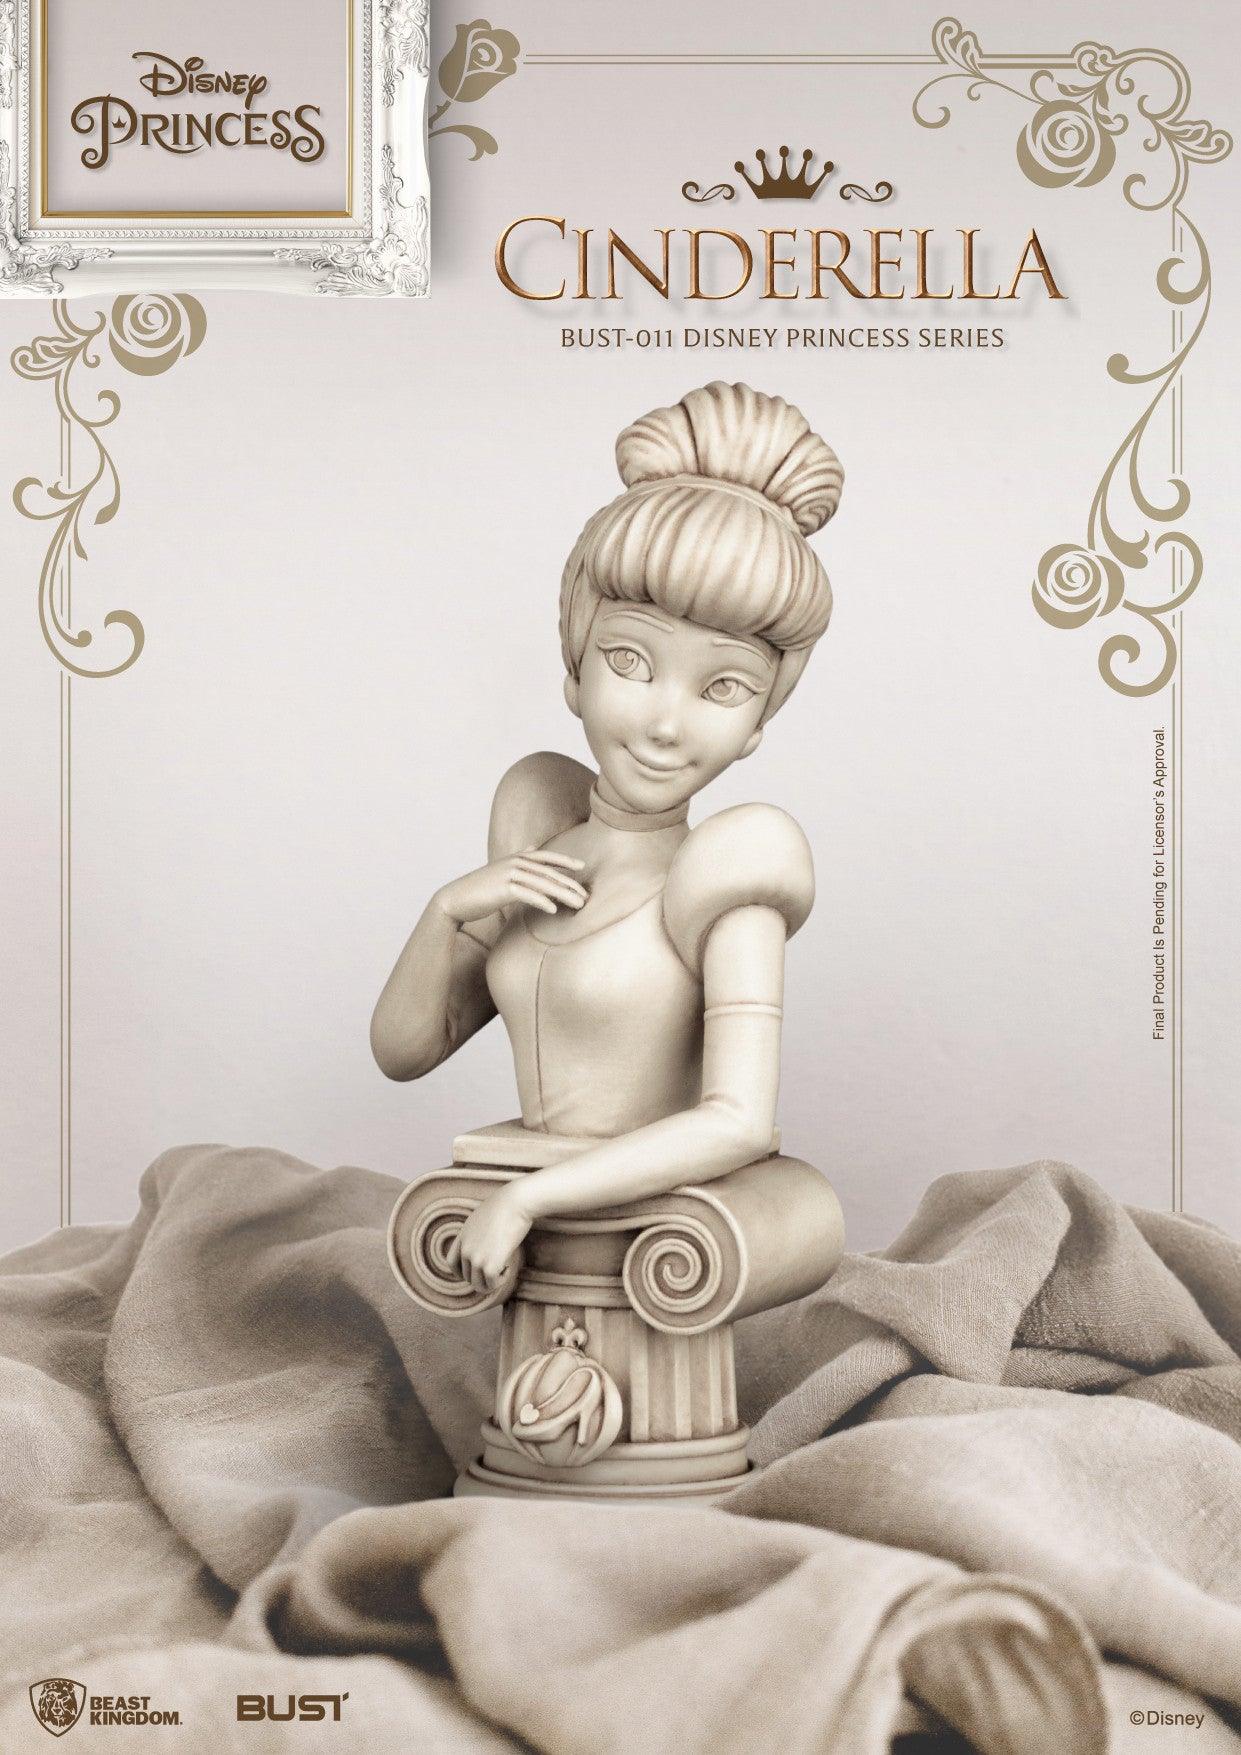 VR-106979 Beast Kingdom Bust Disney Princess Series Cinderella - Beast Kingdom - Titan Pop Culture